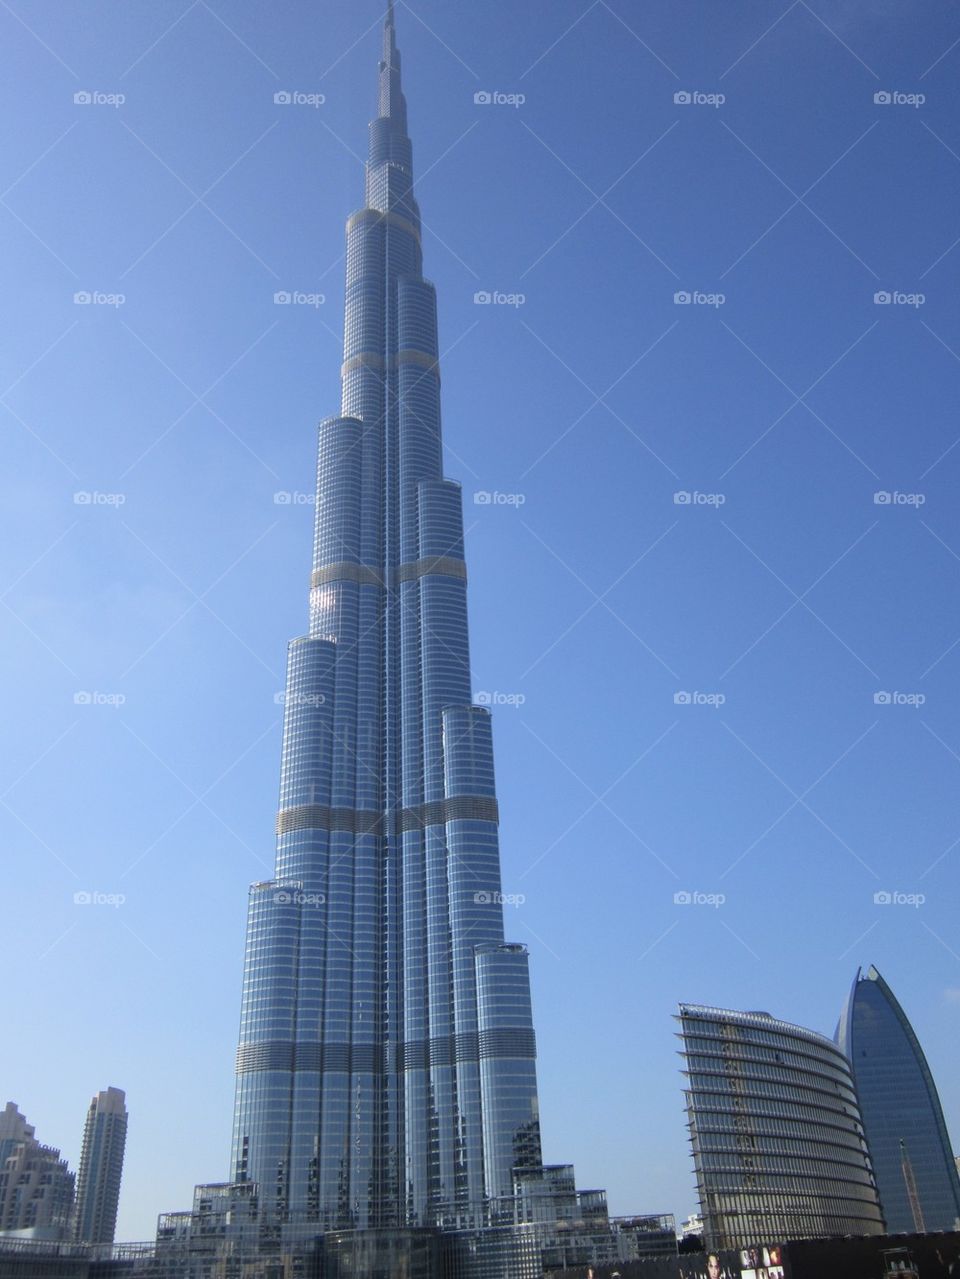 Burj Khalifa Dubai ( khalifa Tower)